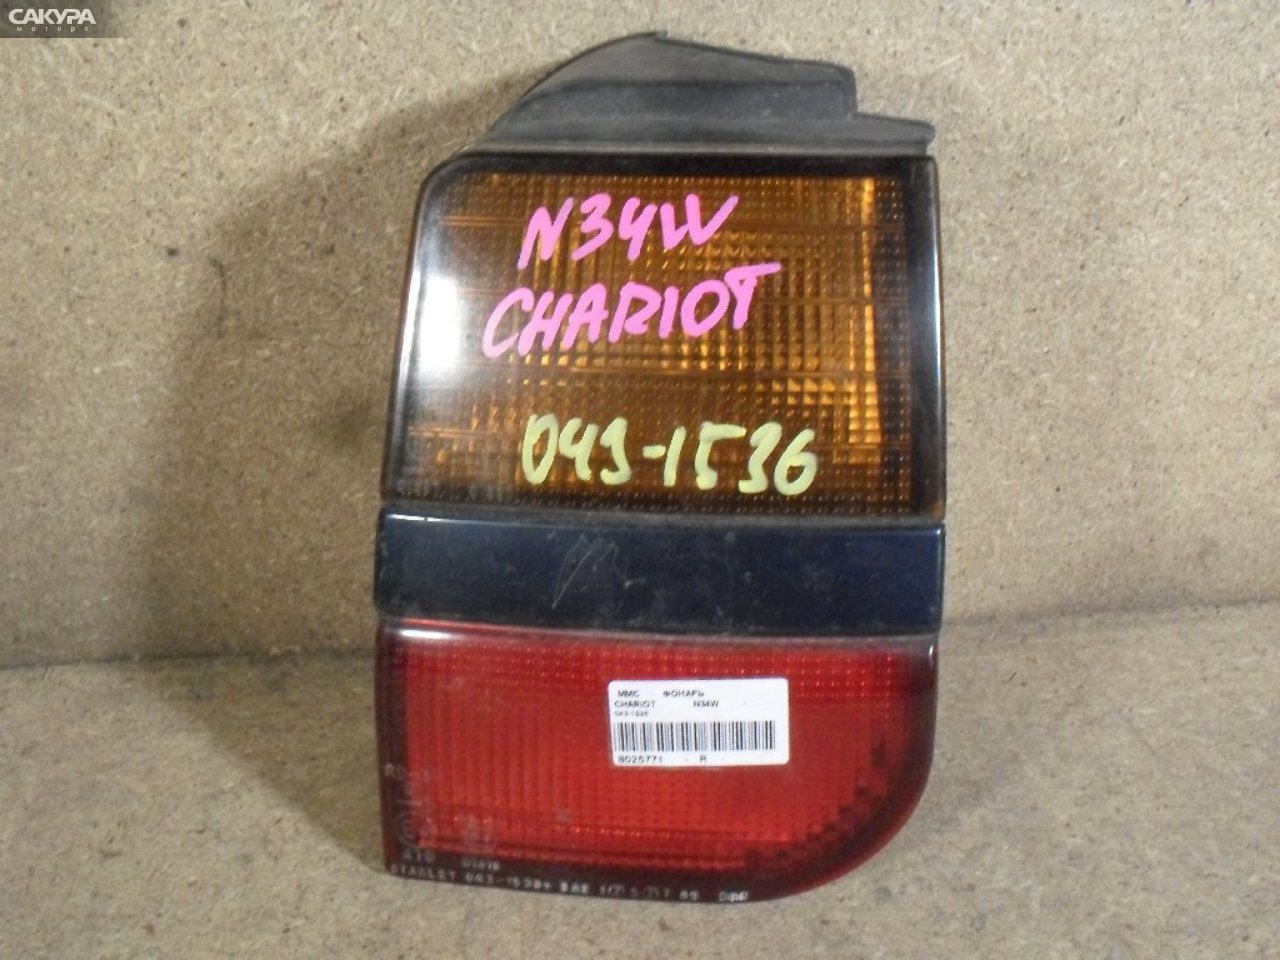 Фонарь стоп-сигнала правый Mitsubishi Chariot N34W 043-1536: купить в Сакура Абакан.